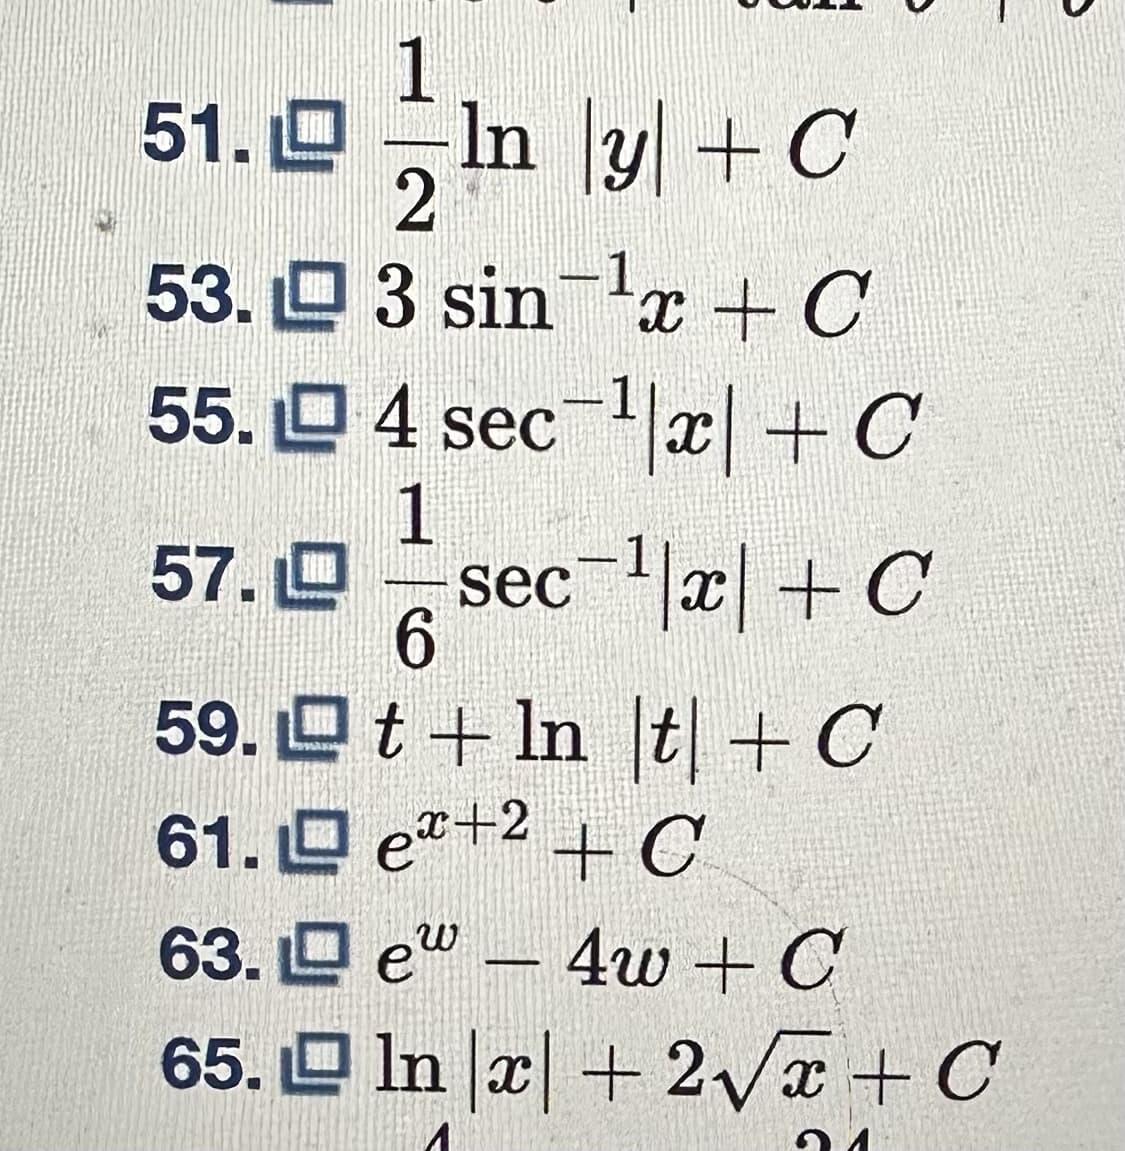 1
51. In y + C
2
53.3 sin ¹x + C
55.4 sec¹|x| + C
-sec-¹|x| + C
57. L
59.
1
63.
65.
-
6
t + ln |t| + C
61.e+2+C
e4w + C
ln x + 2√x + C